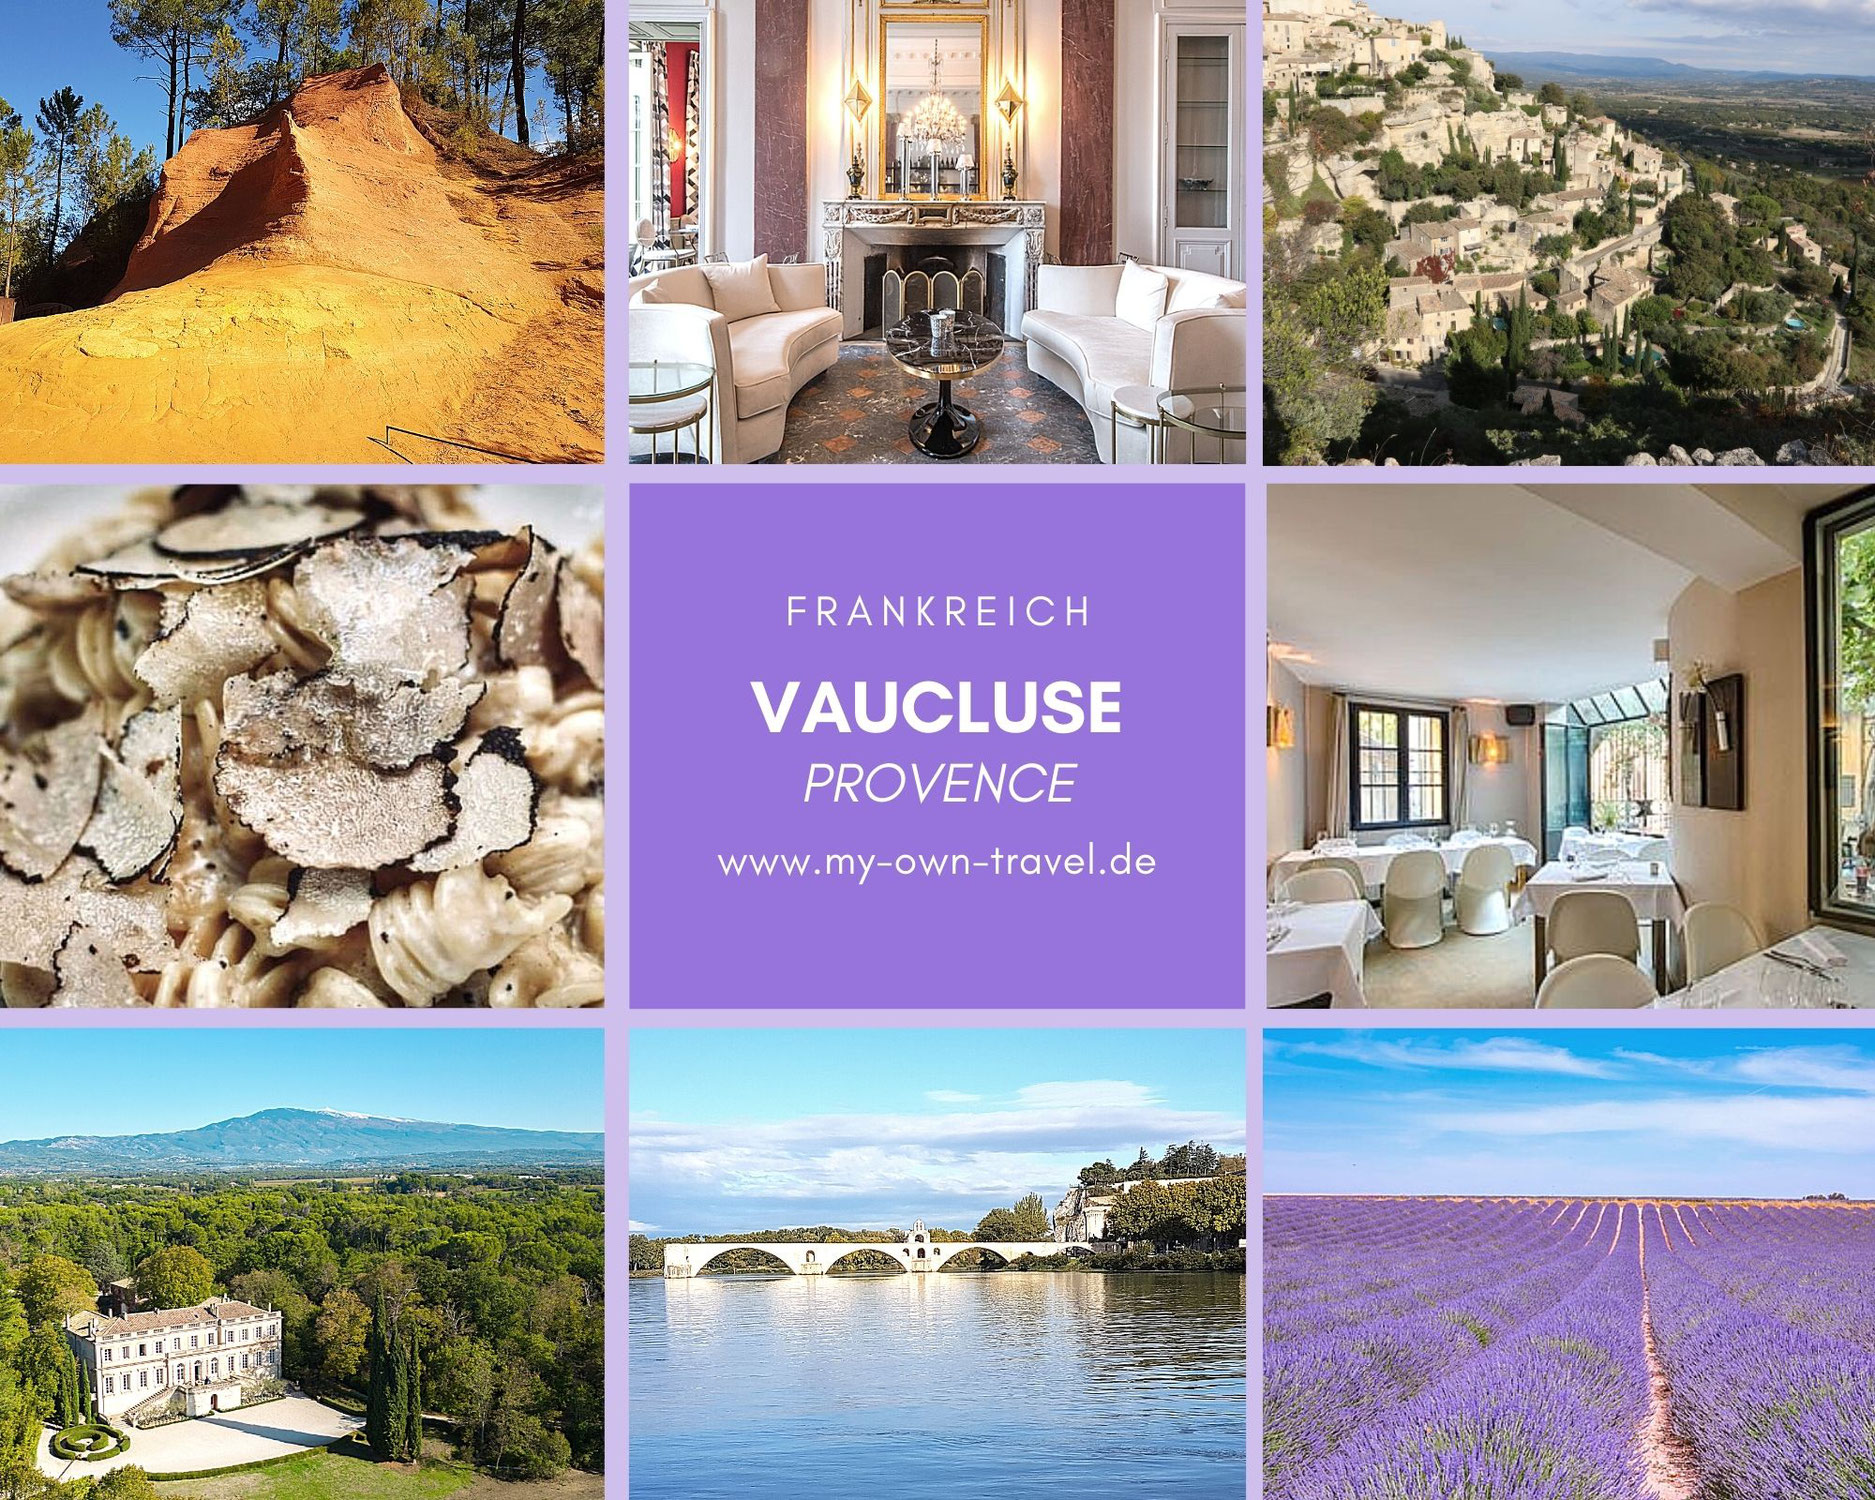 Fünf sehr gute Gründe für eine Reise ins Vaucluse